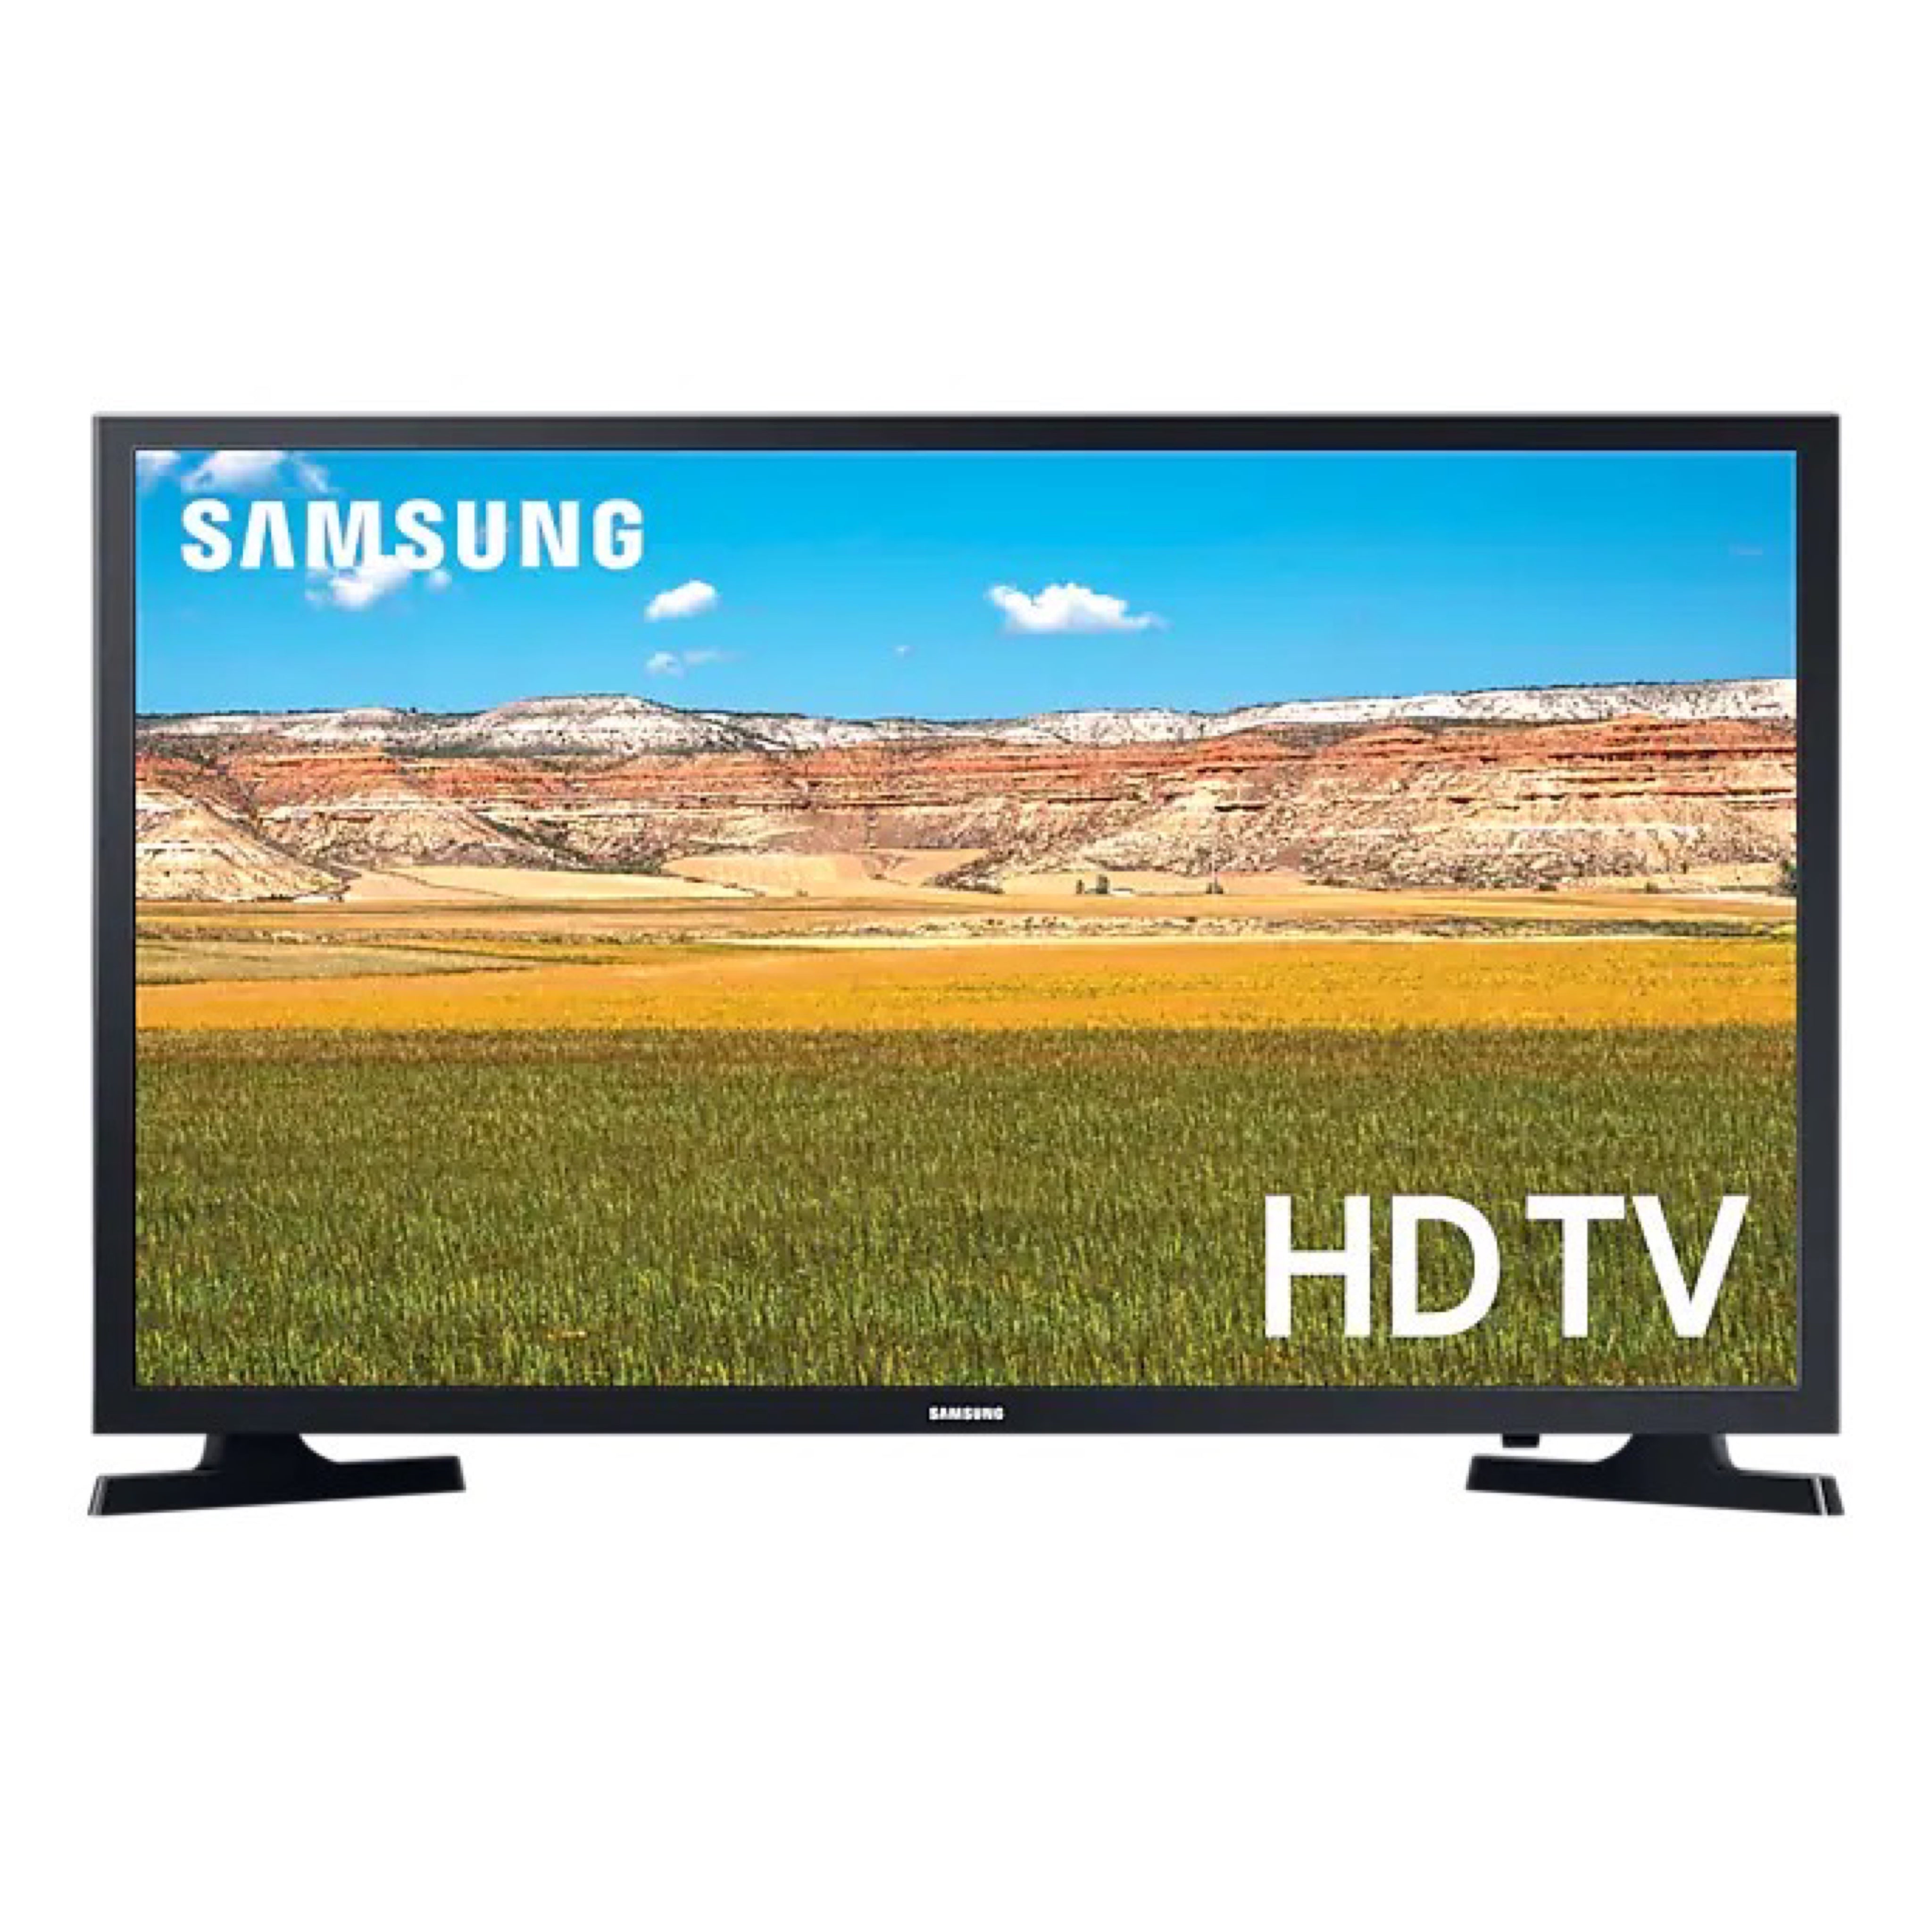 Samsung HD Smart LED TV T5300